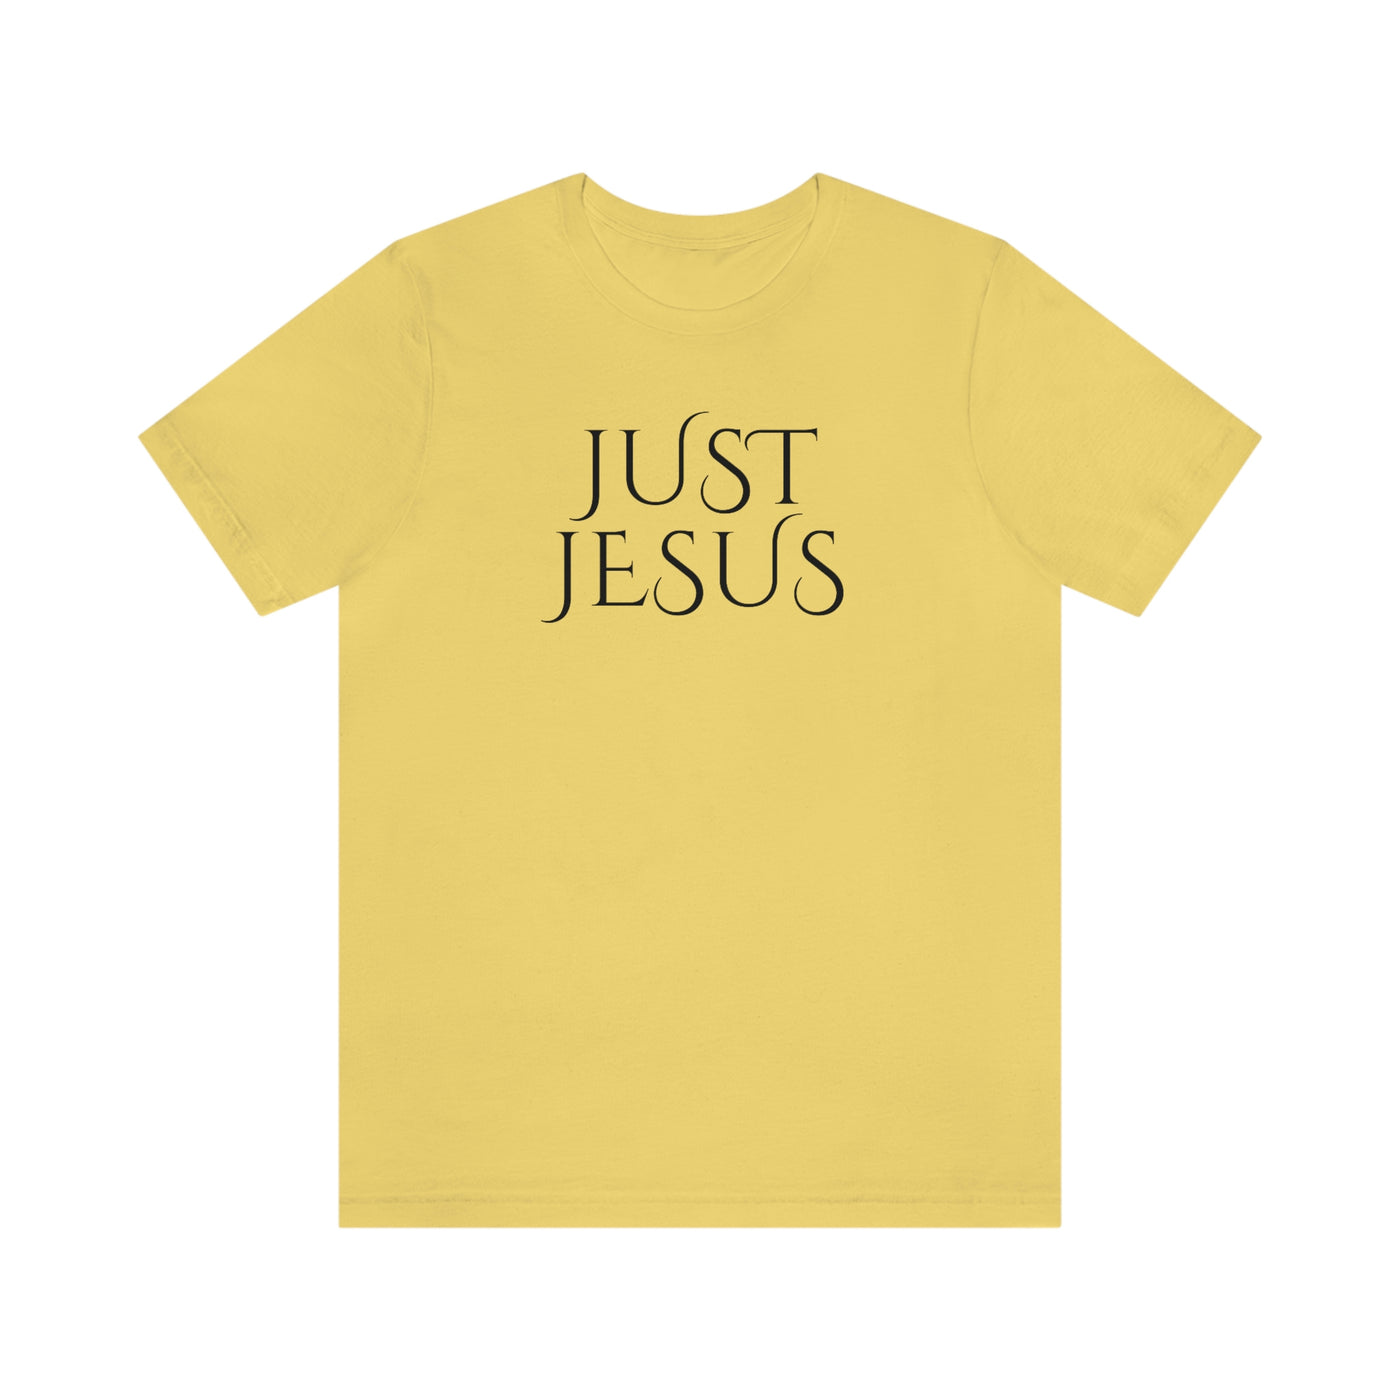 Just Jesus Tee